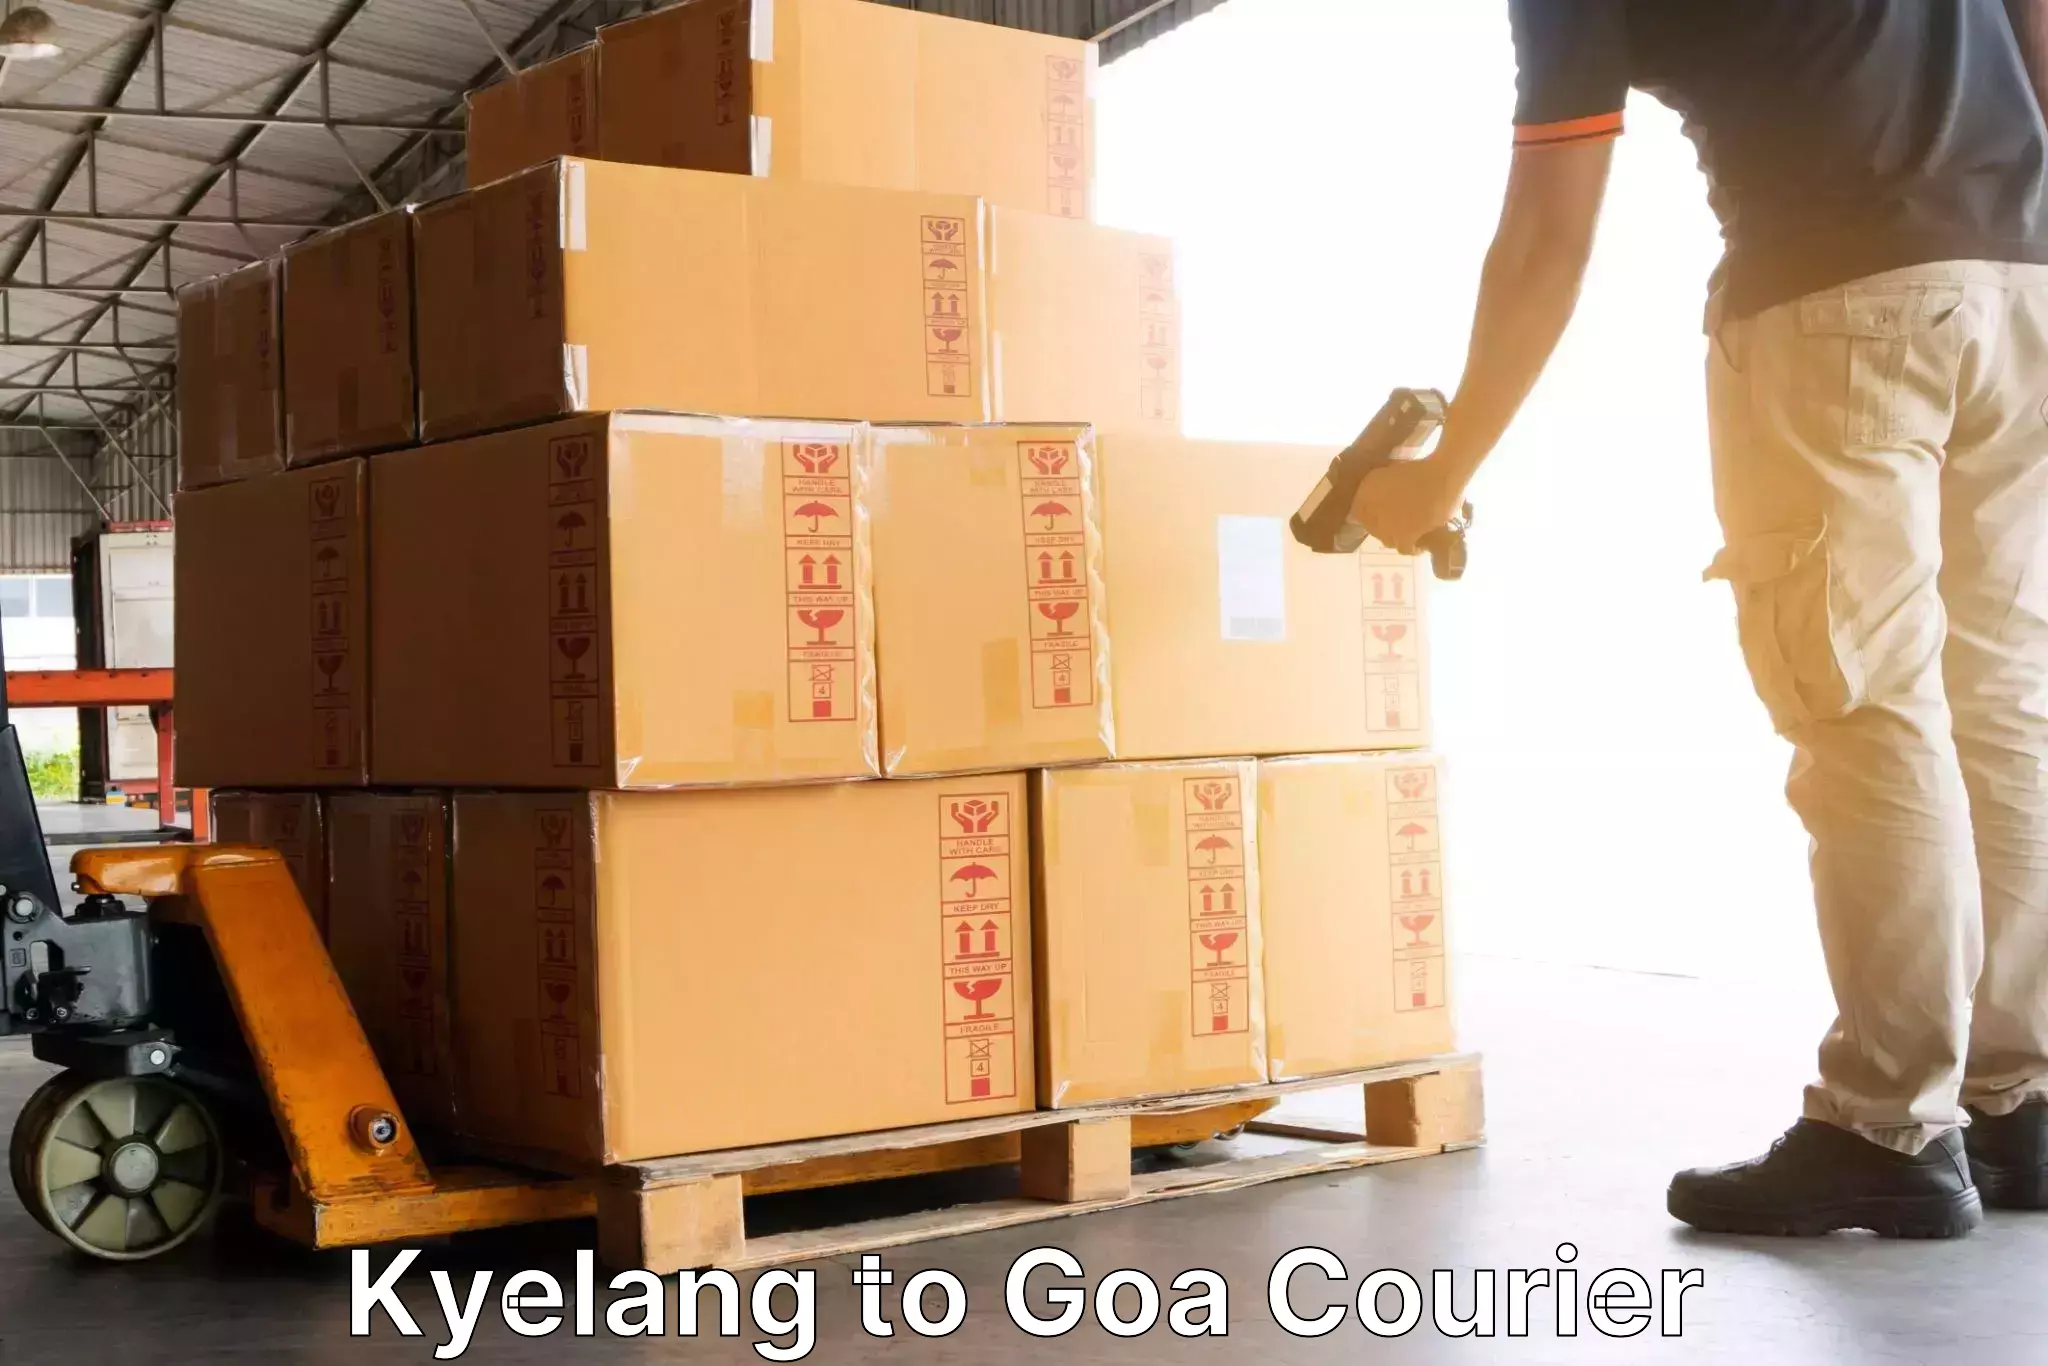 Global shipping solutions Kyelang to Mormugao Port